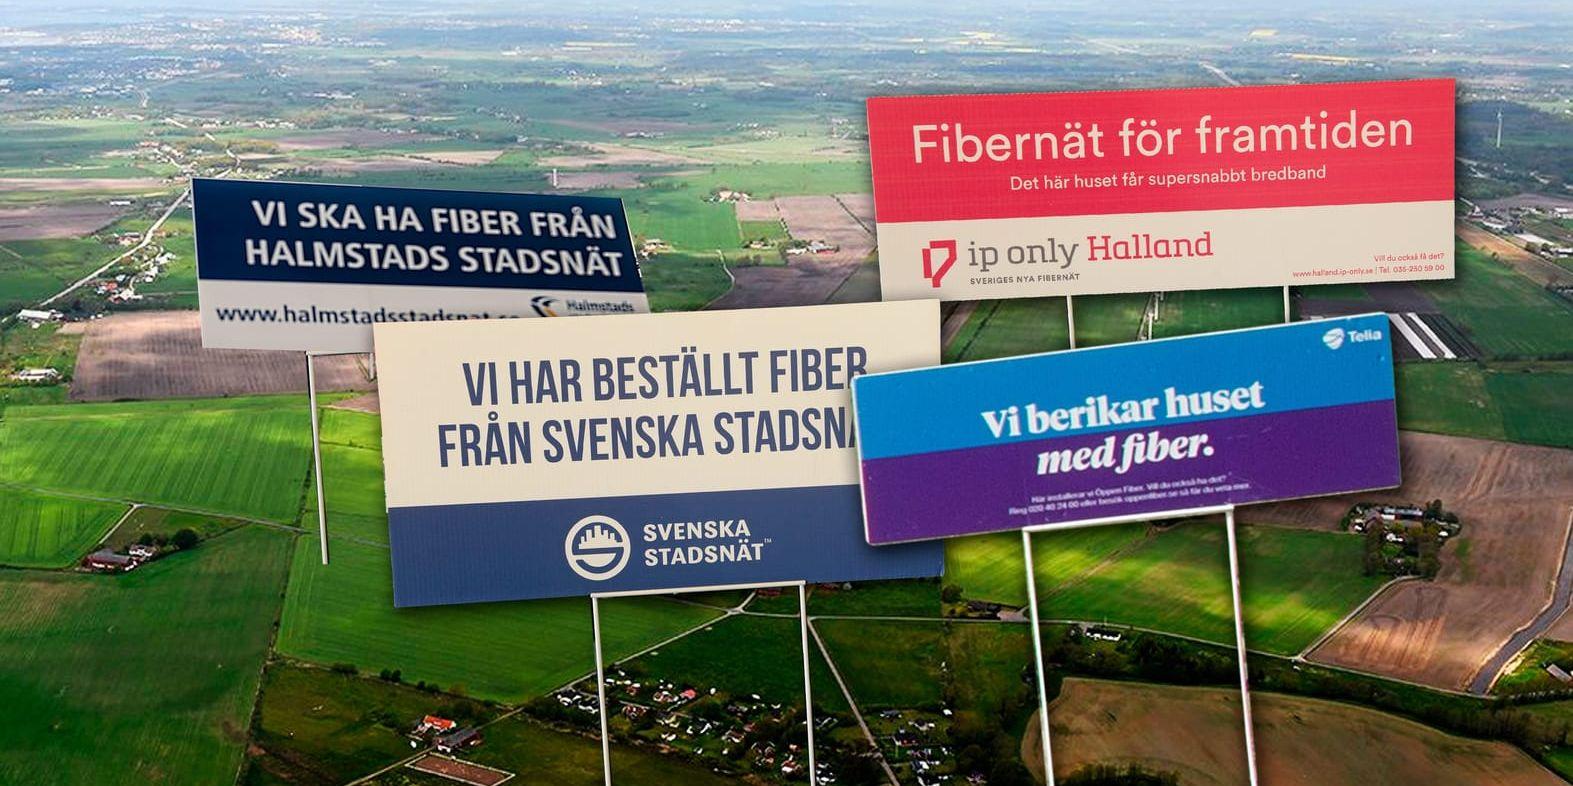 Hård konkurrens. Länge var Halmstads stadsnät ensam om att erbjuda fiber. Nu har man konkurrens från IP-Only, Svenska stadsnät och Telia Fiber.